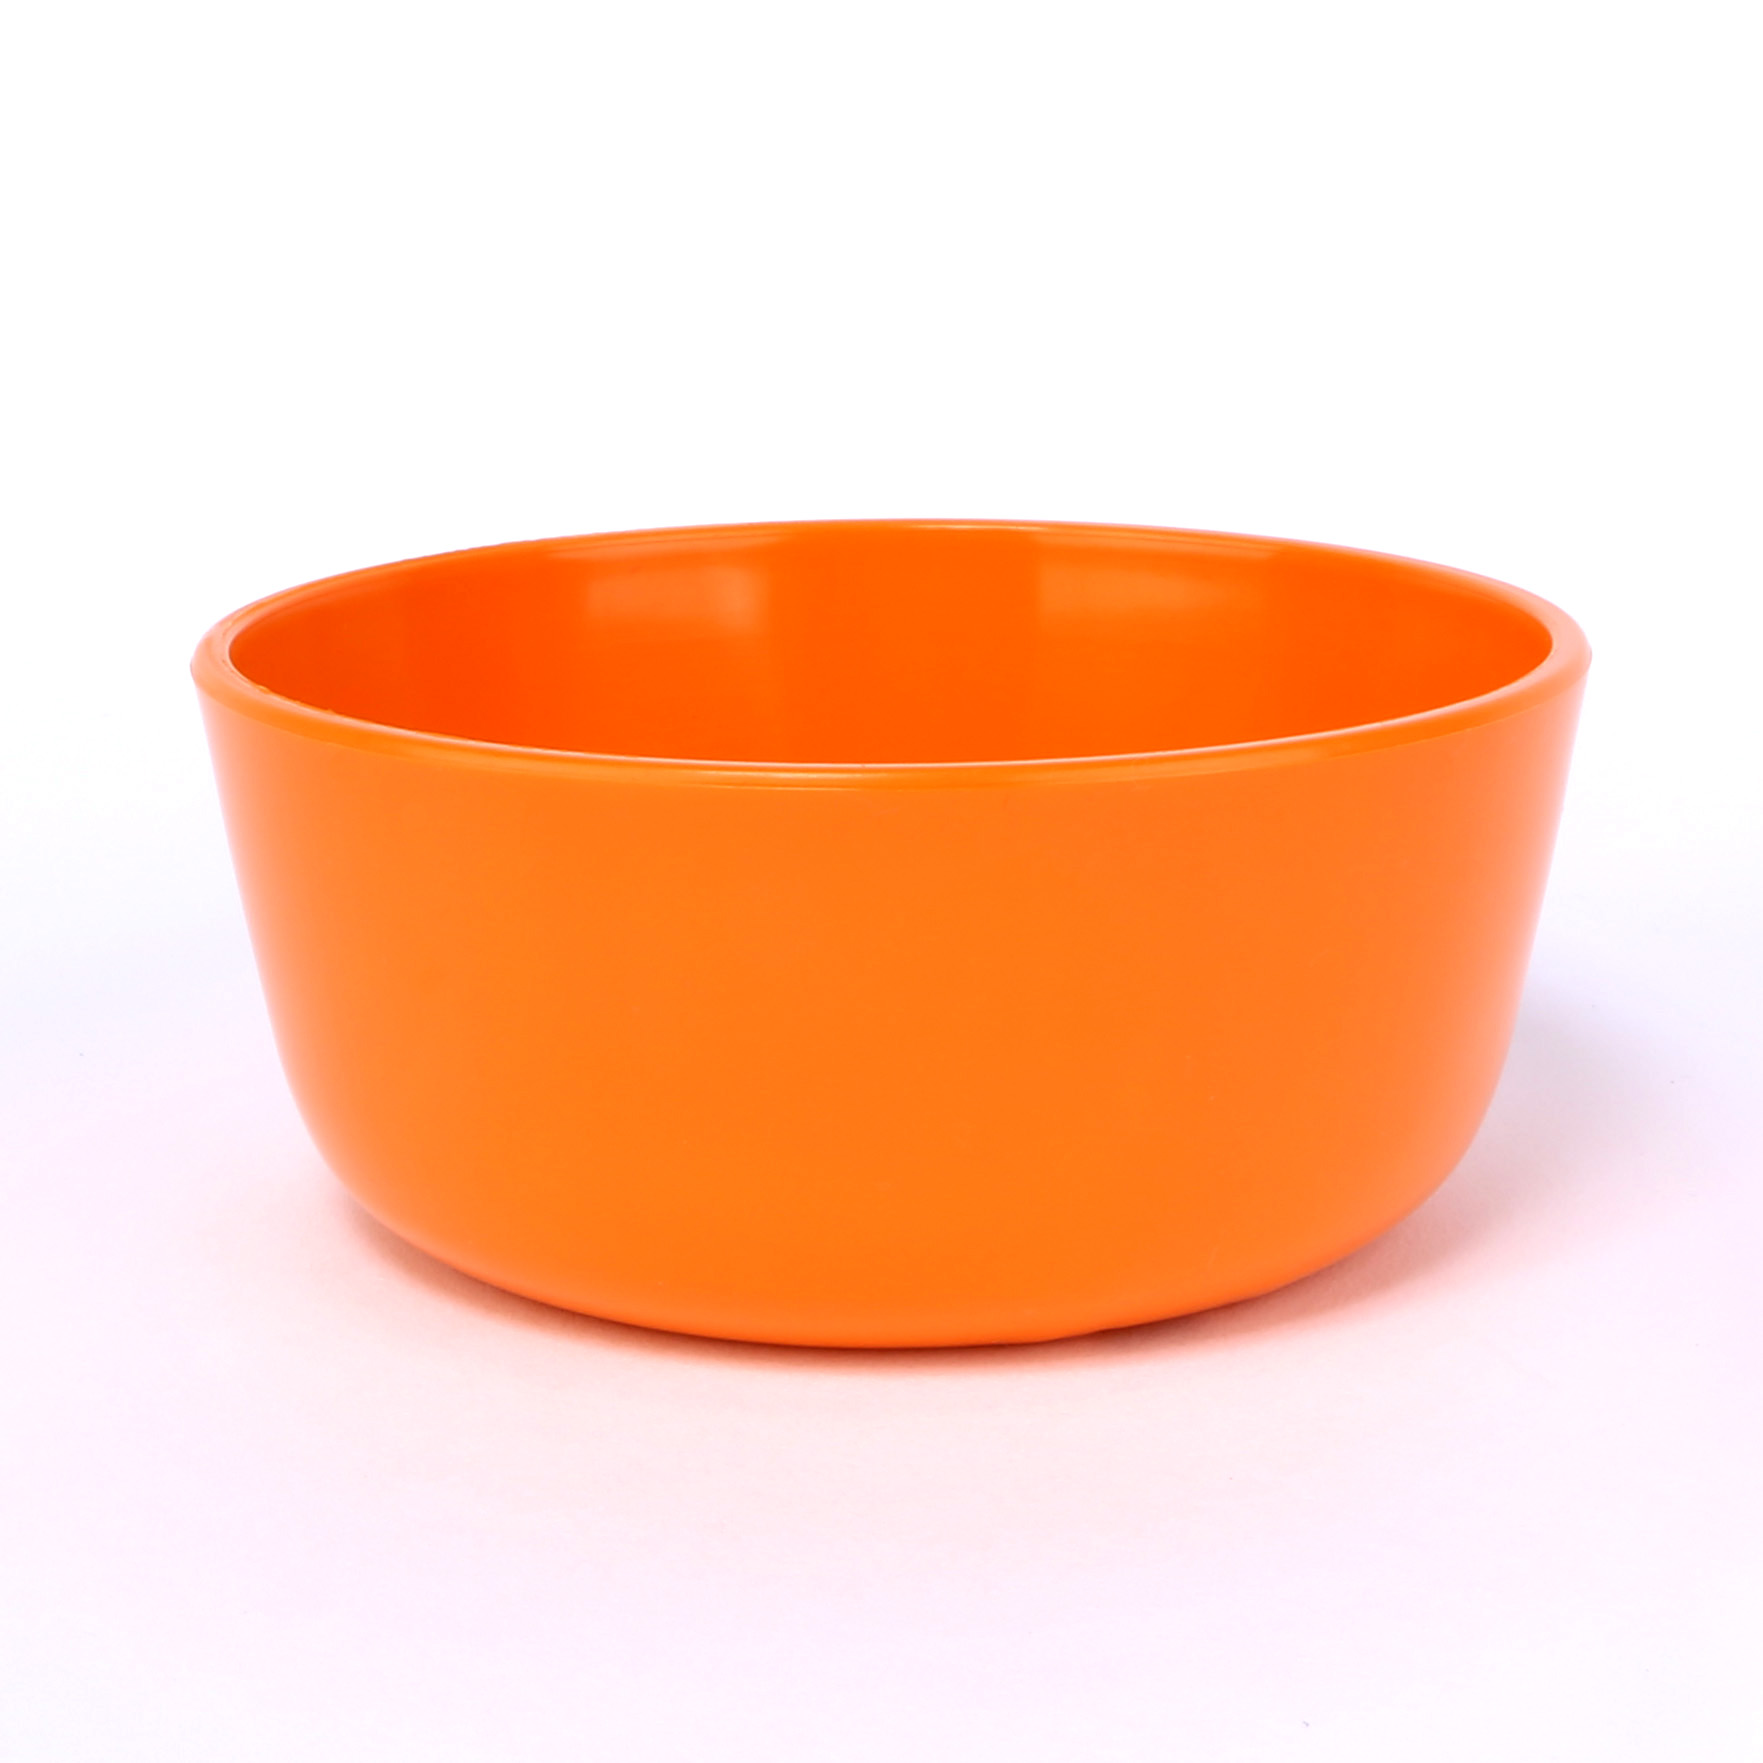 vaLon Zephyr hohe Dessertschale aus 11 cm schadstofffreiem Kunststoff in der Farbe orange.